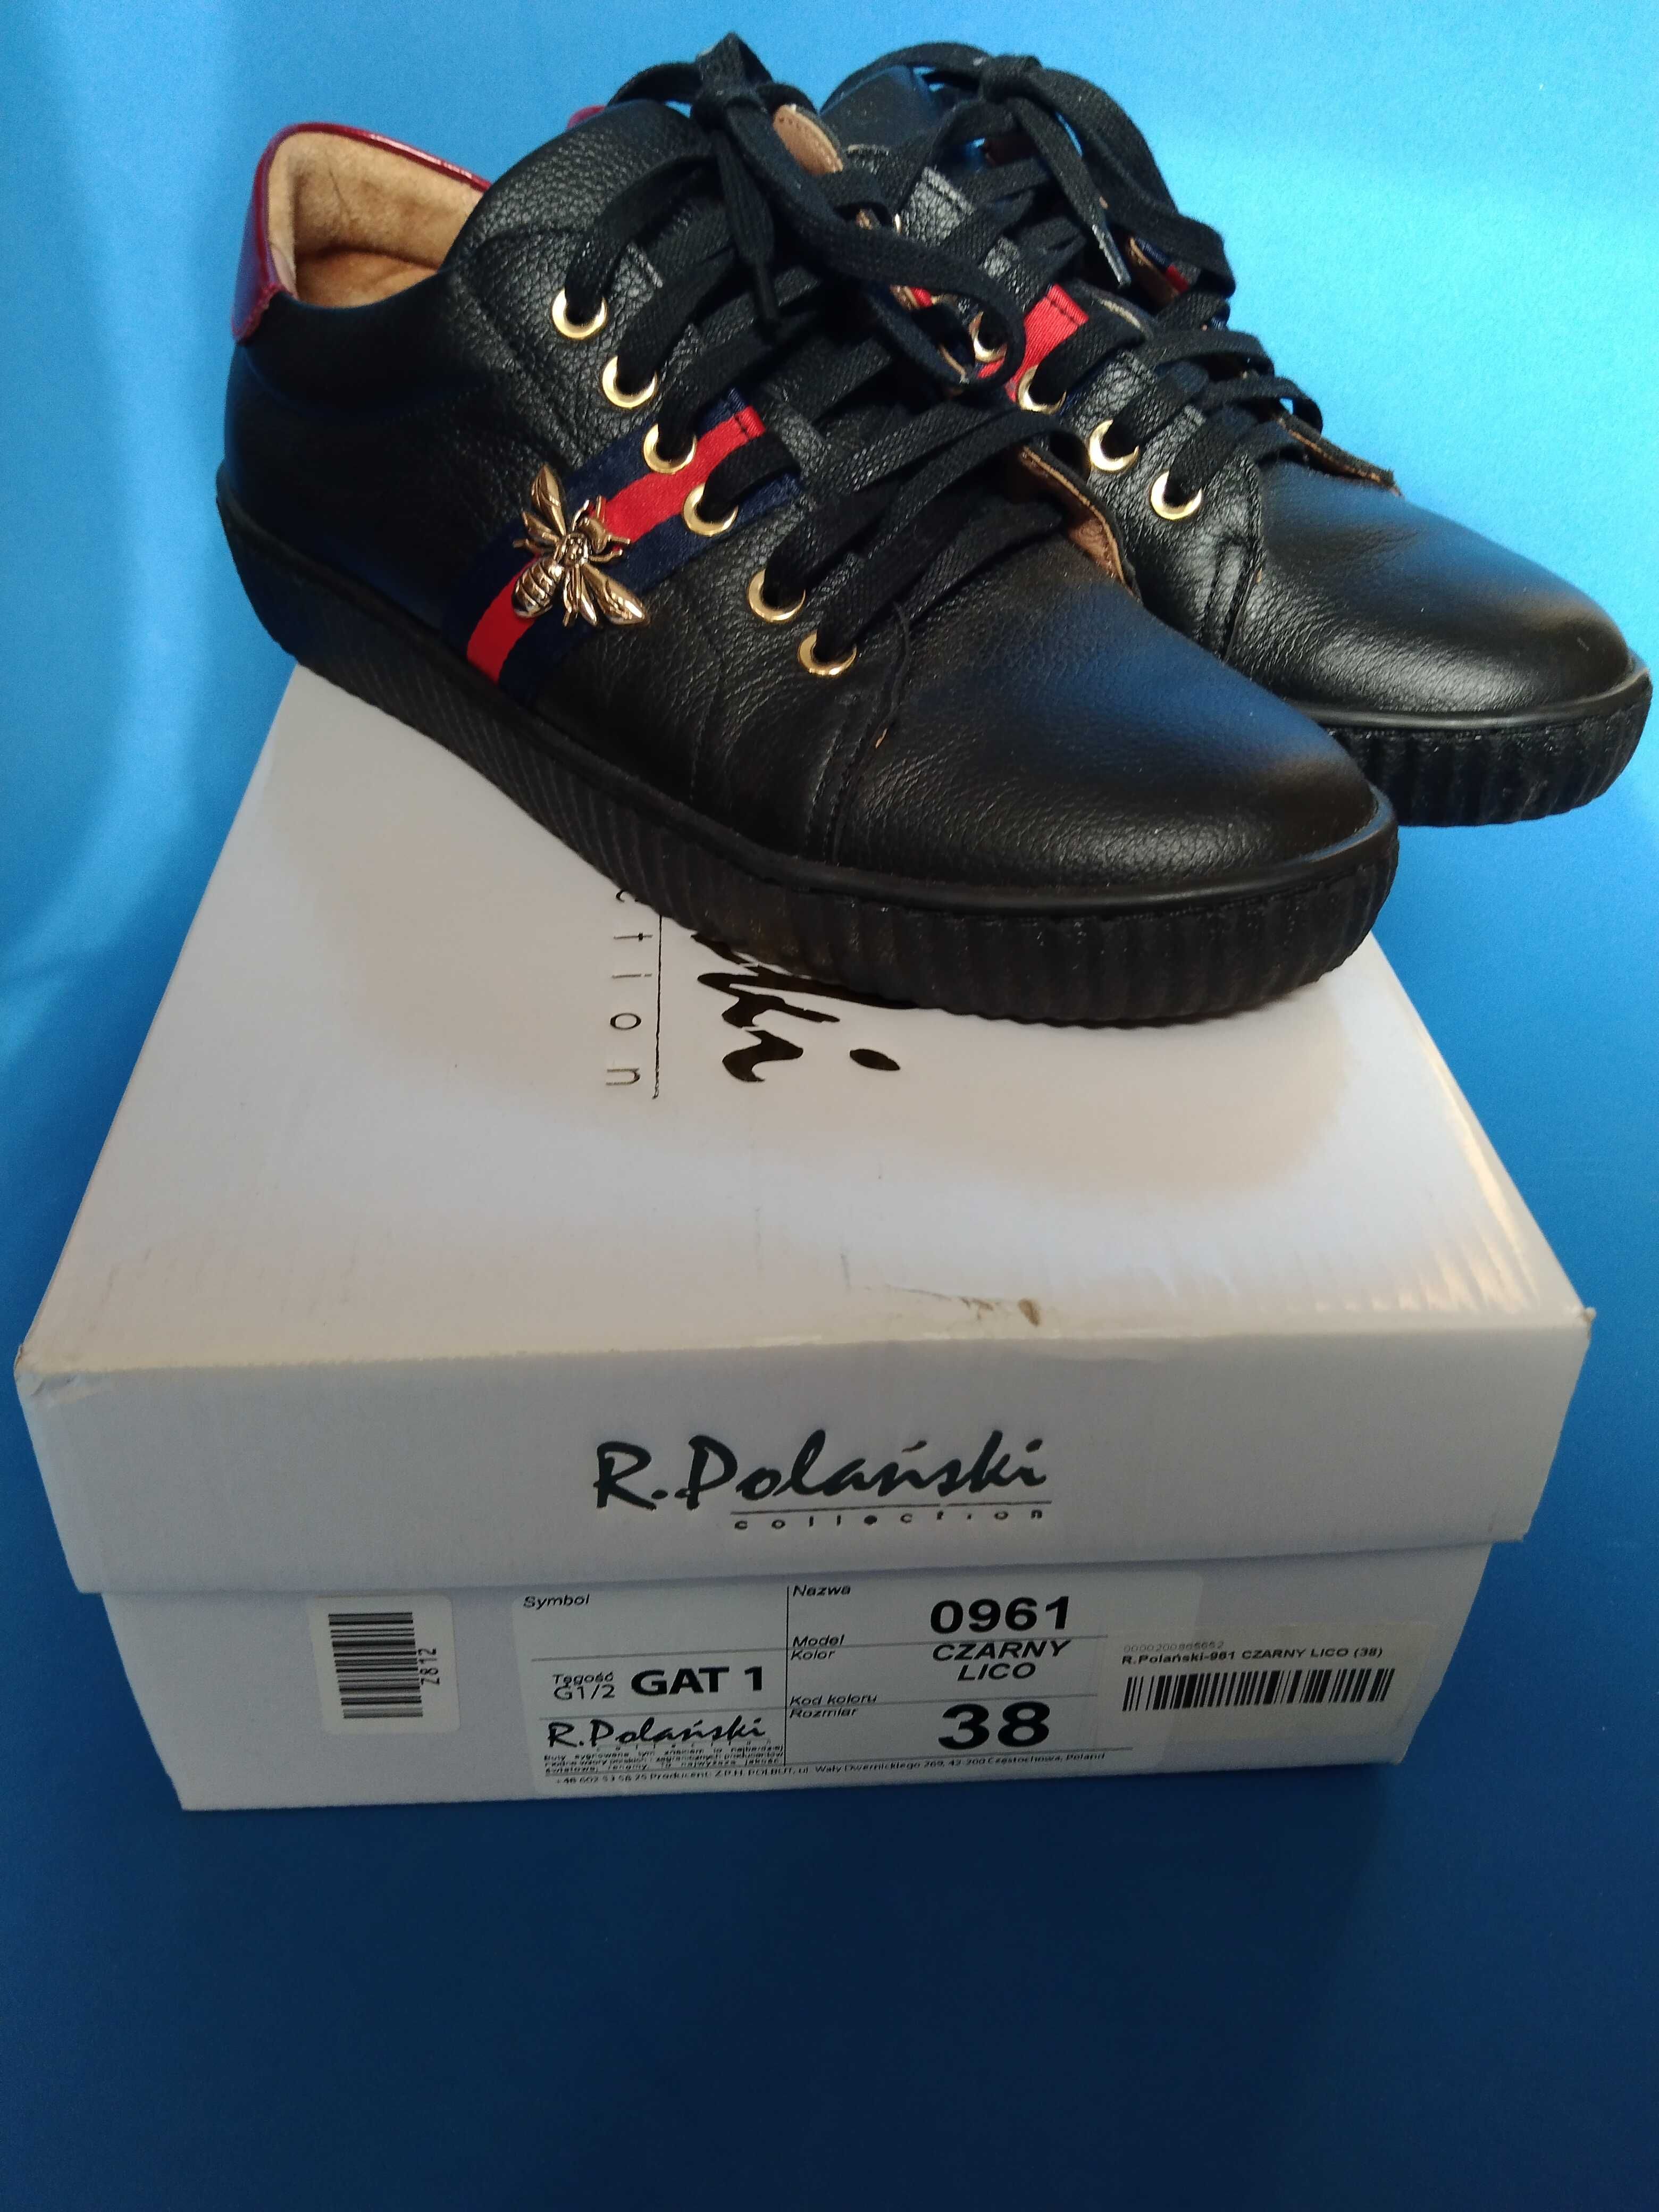 R. Polanski buty sneakery, czarne, naturalna skóra, 25cm